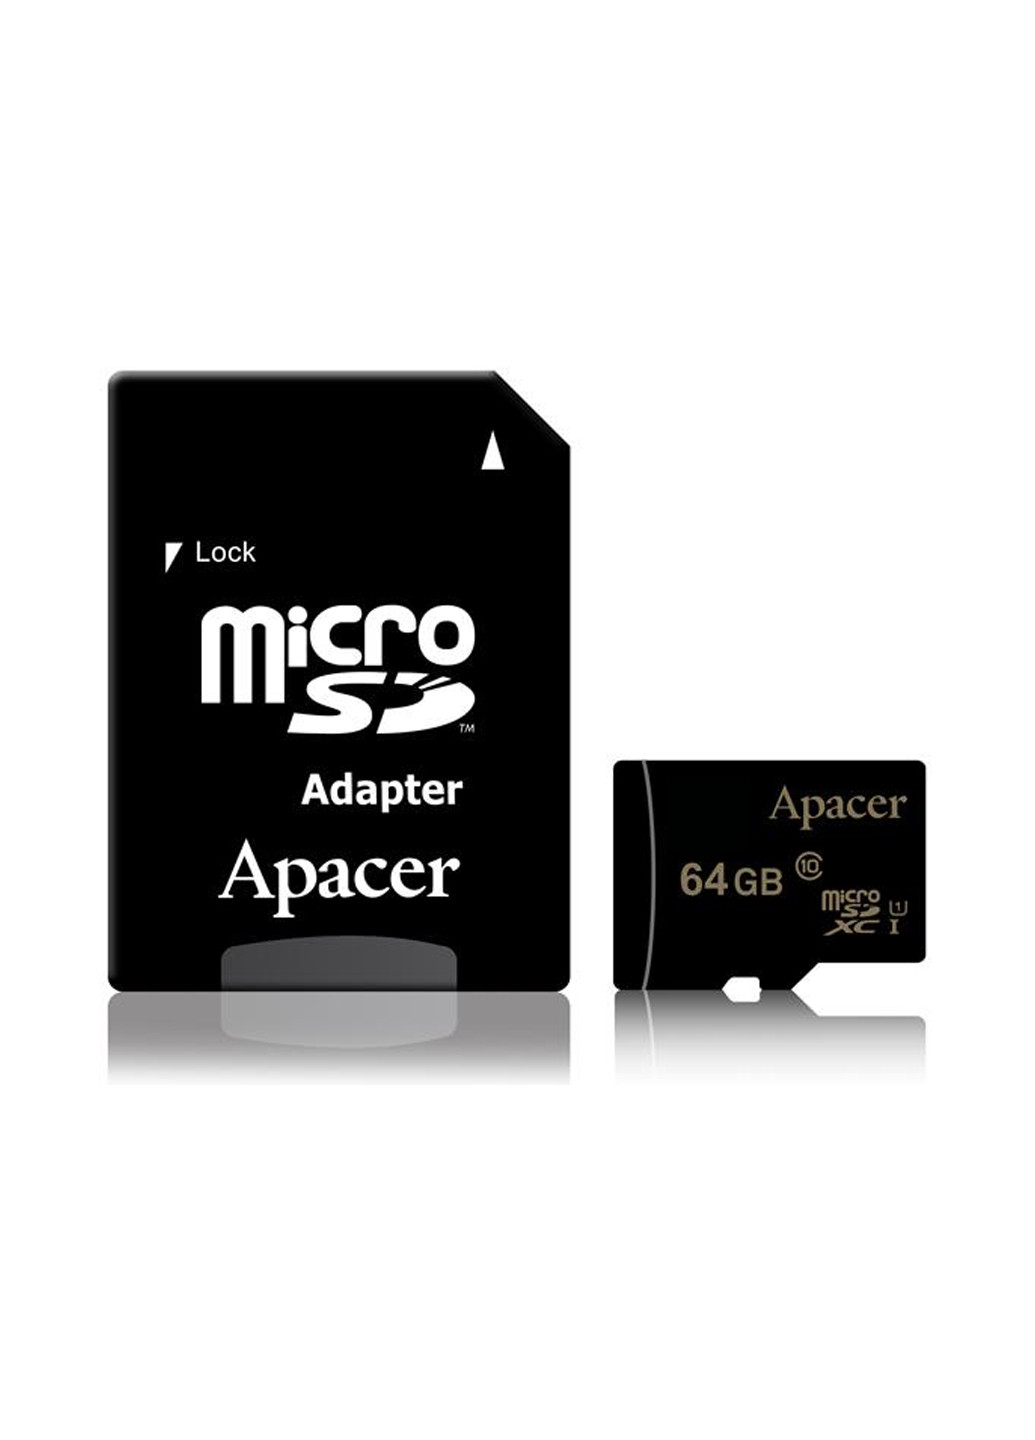 Карта памяти microSDXC 64GB C10 UHS-I + SD-adapter (AP64GMCSX10U1-R) Apacer карта памяти apacer microsdxc 64gb c10 uhs-i + sd-adapter (ap64gmcsx10u1-r) (130843065)